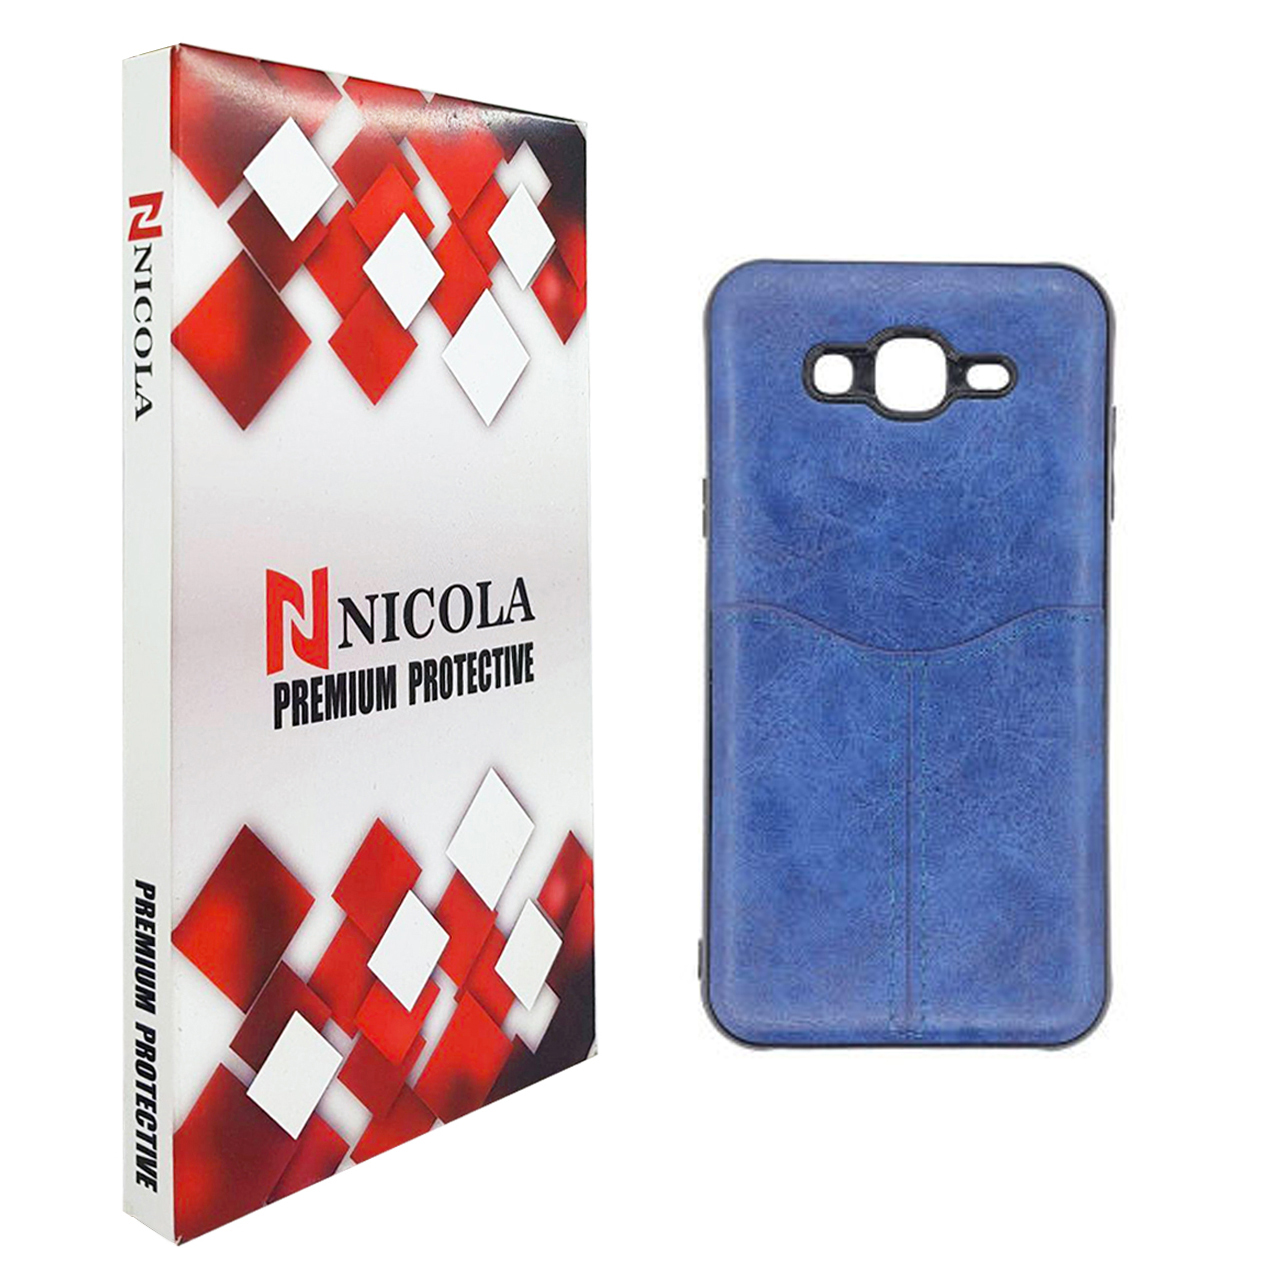 کاور نیکلا مدل N_CT مناسب برای گوشی موبایل سامسونگ Galaxy J2 Prime